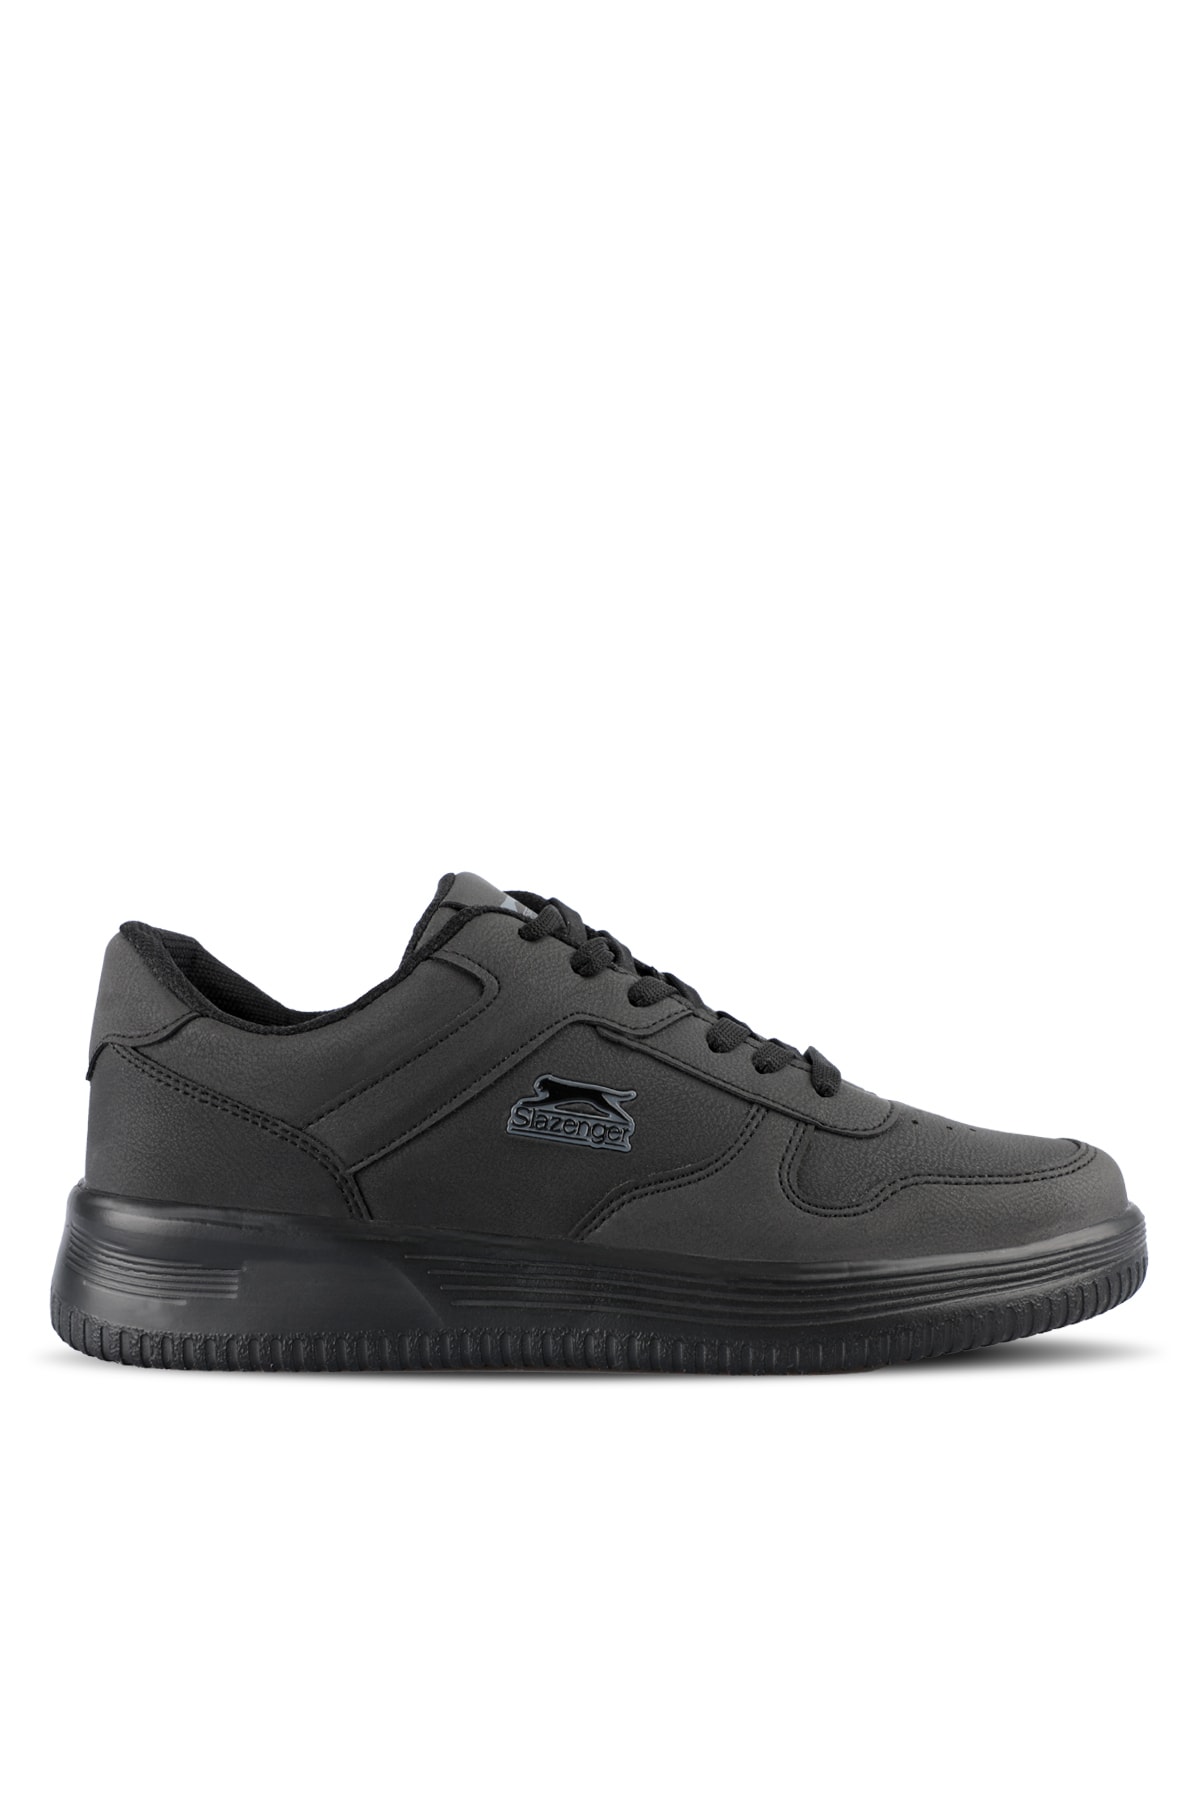 Slazenger Eliora I Sneaker Men's Shoes Black / Black